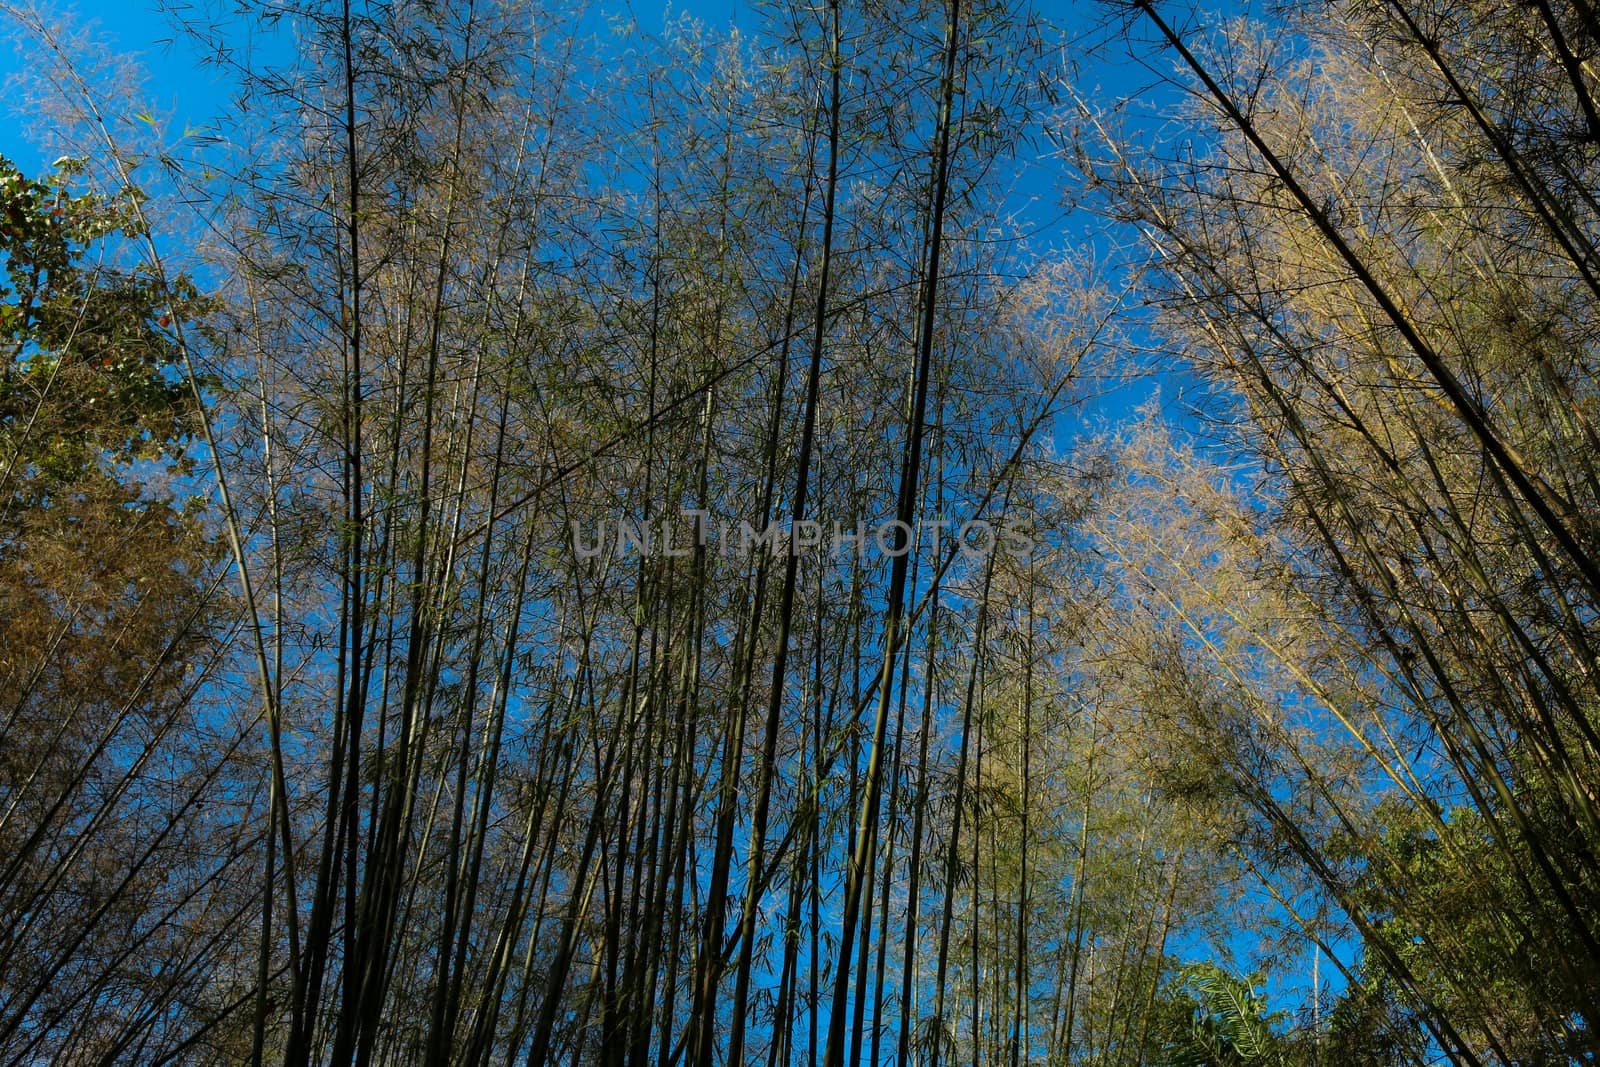 the Bamboo tree